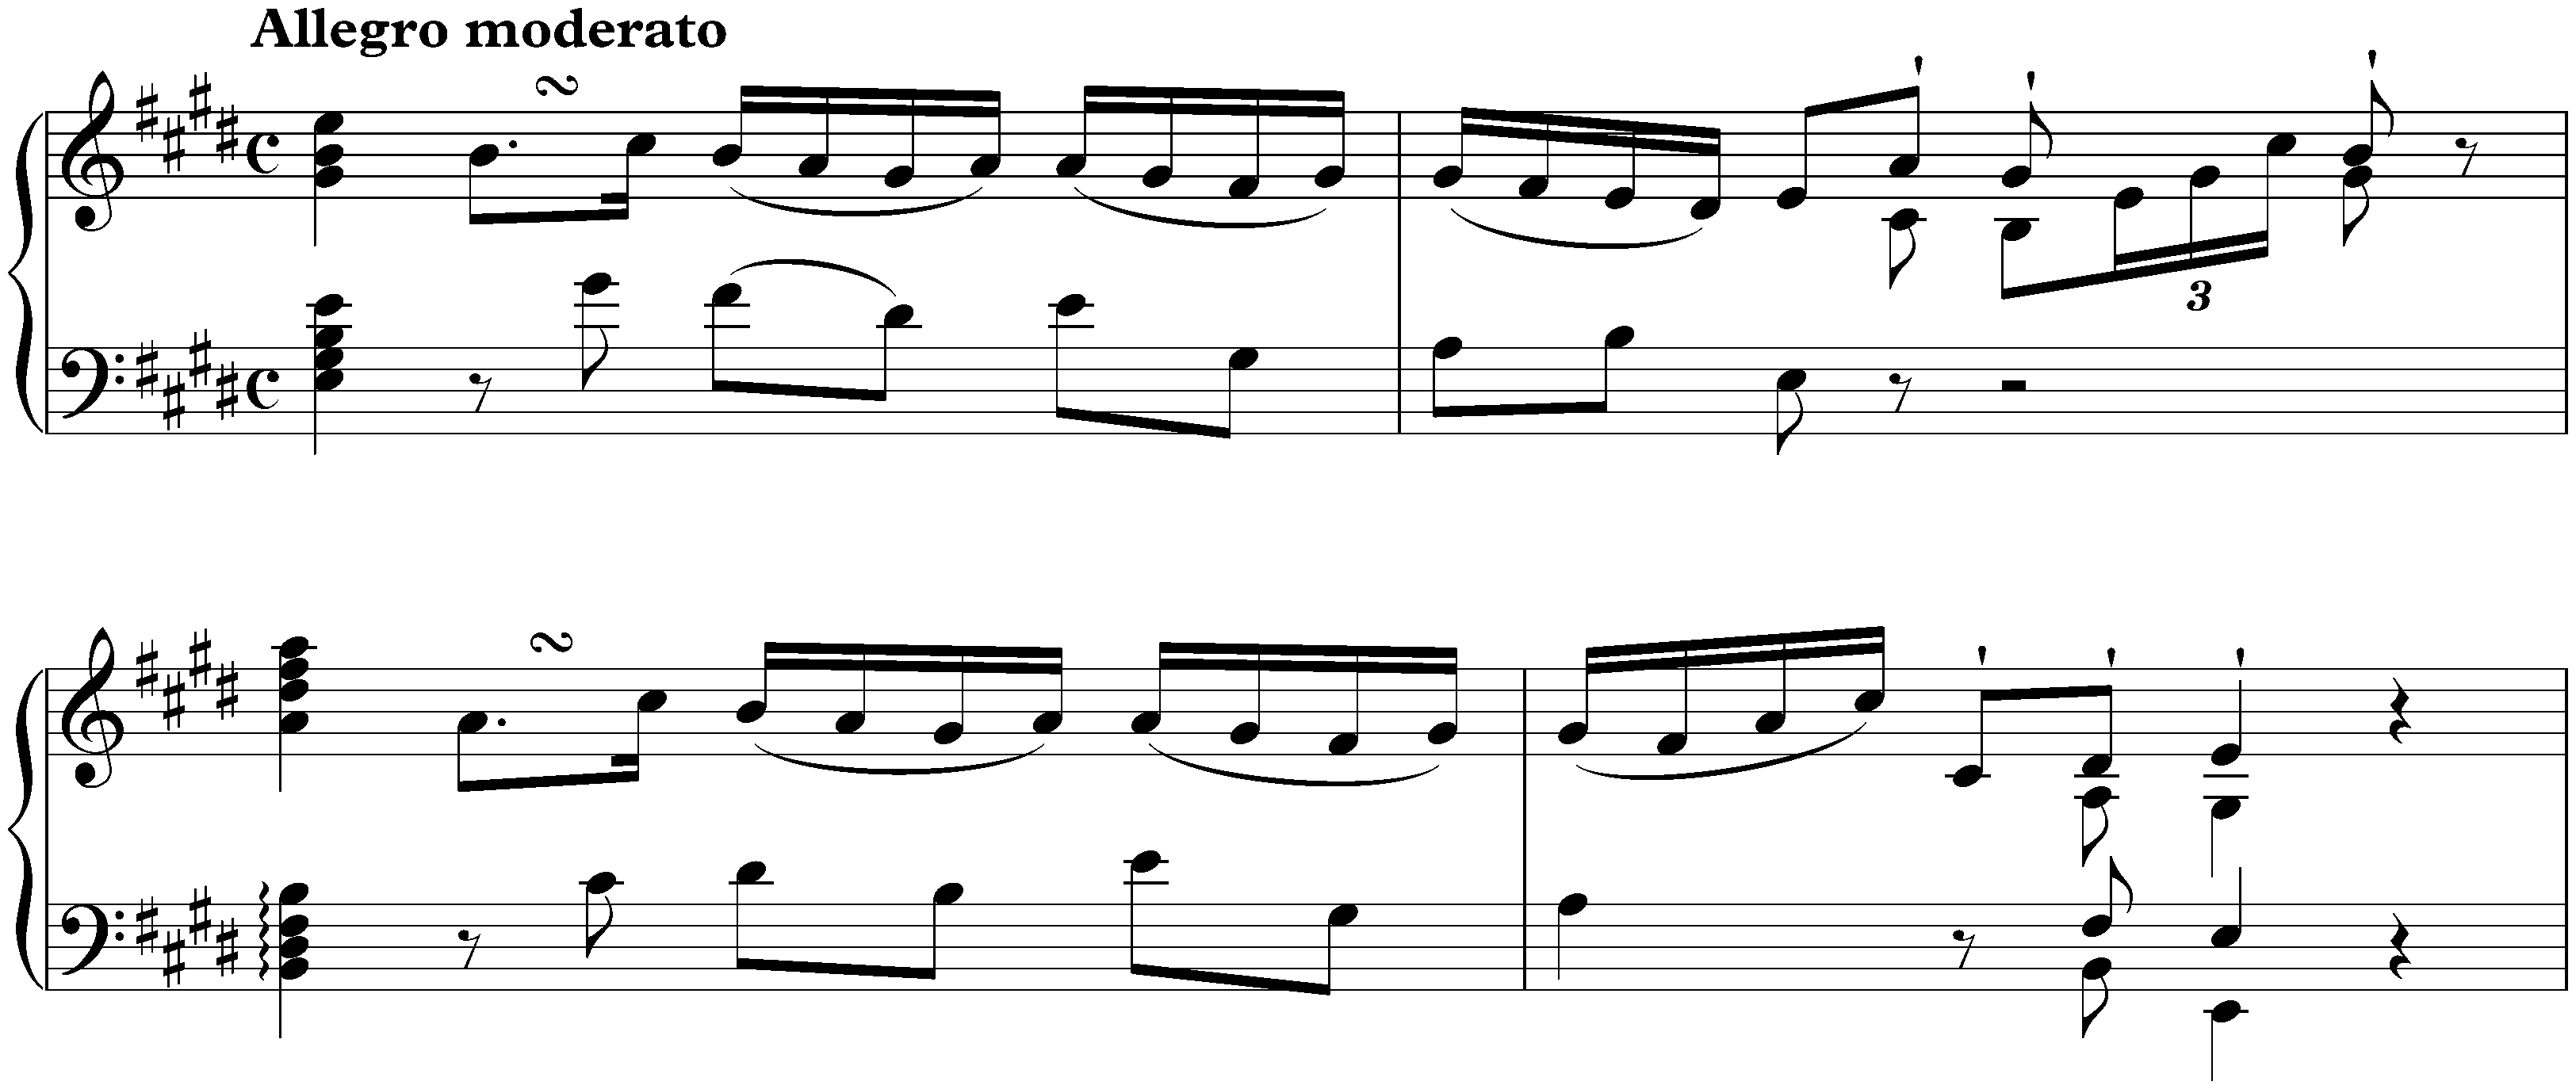 Sonata in E major, Hob. XVI:22; 1. Allegro moderato